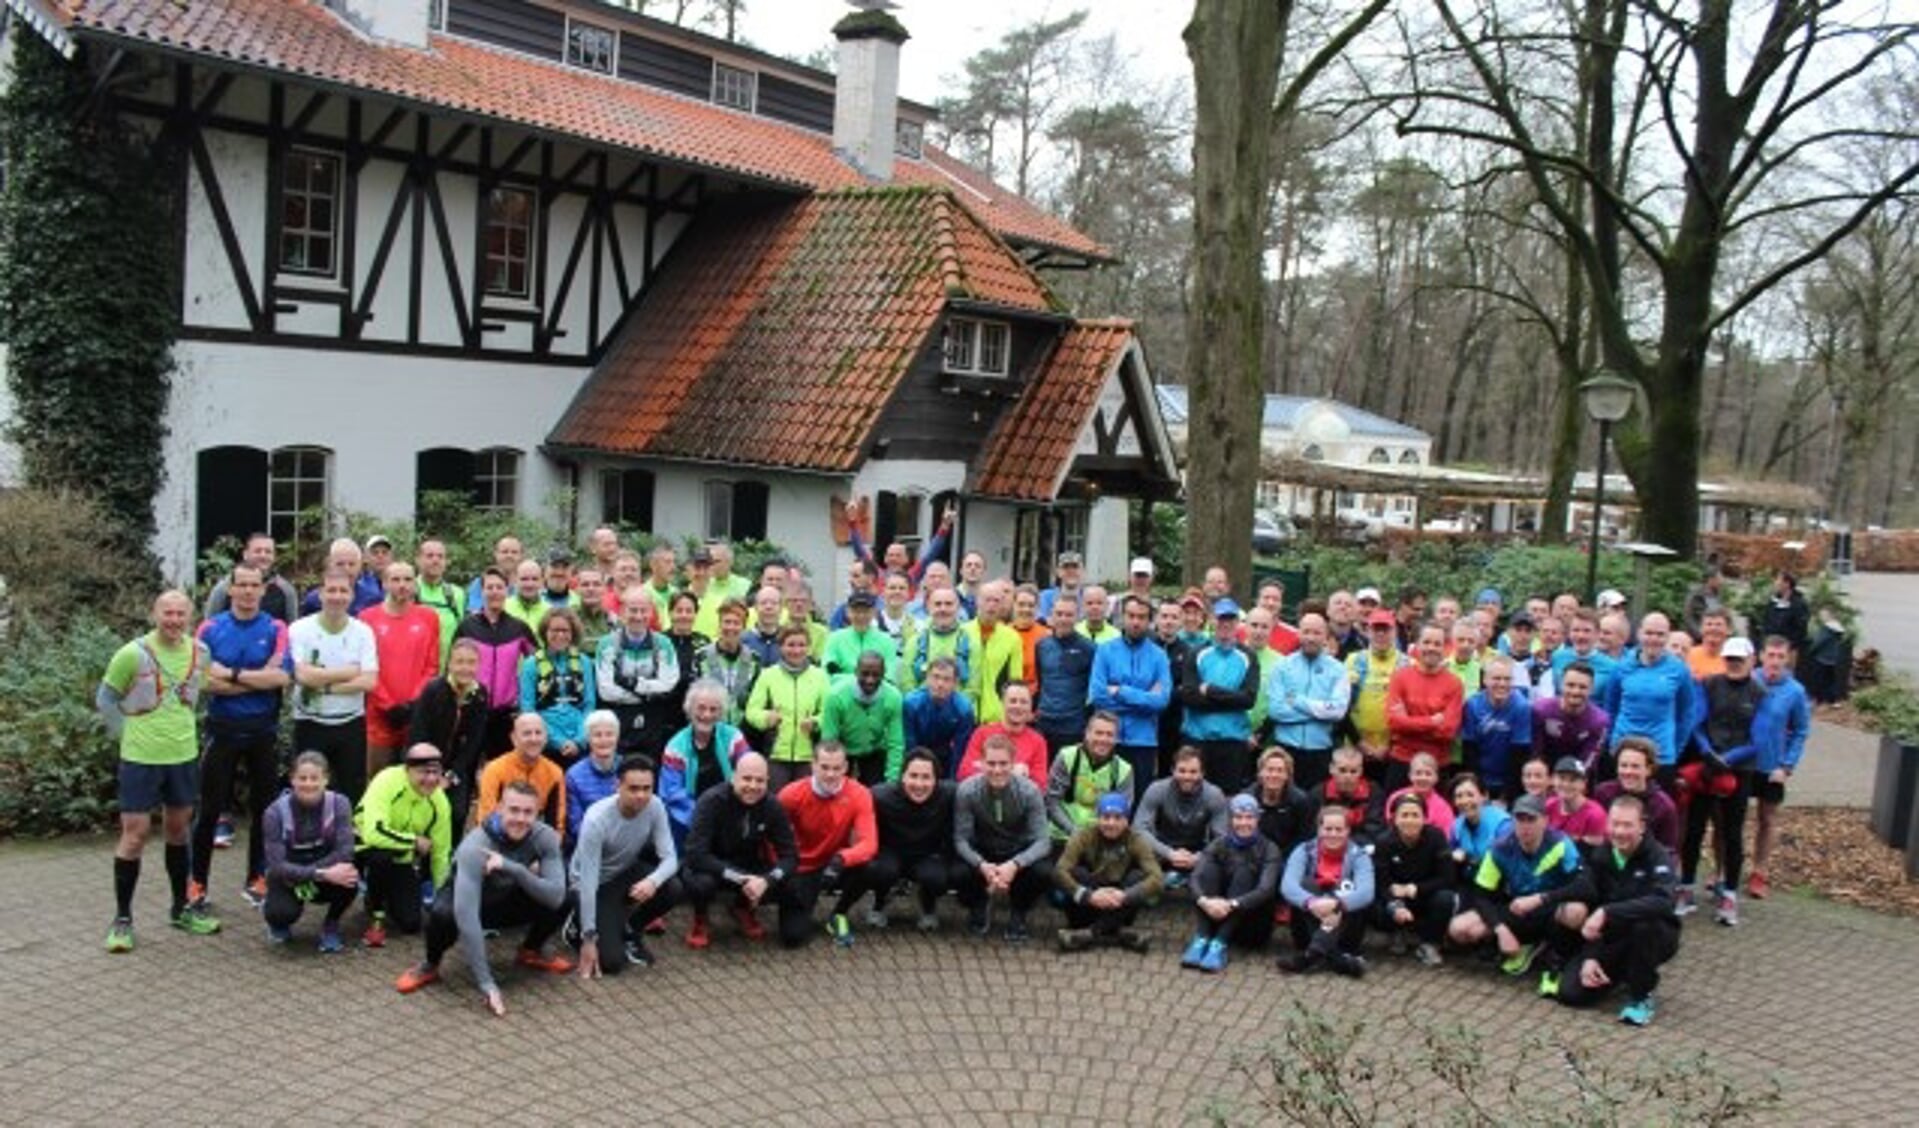 Zaterdag 9 maart werd door de Turbo's van Loopgroep Veenendaal (LGV) voor de 13e keer de Galgenbergmarathon georganiseerd.